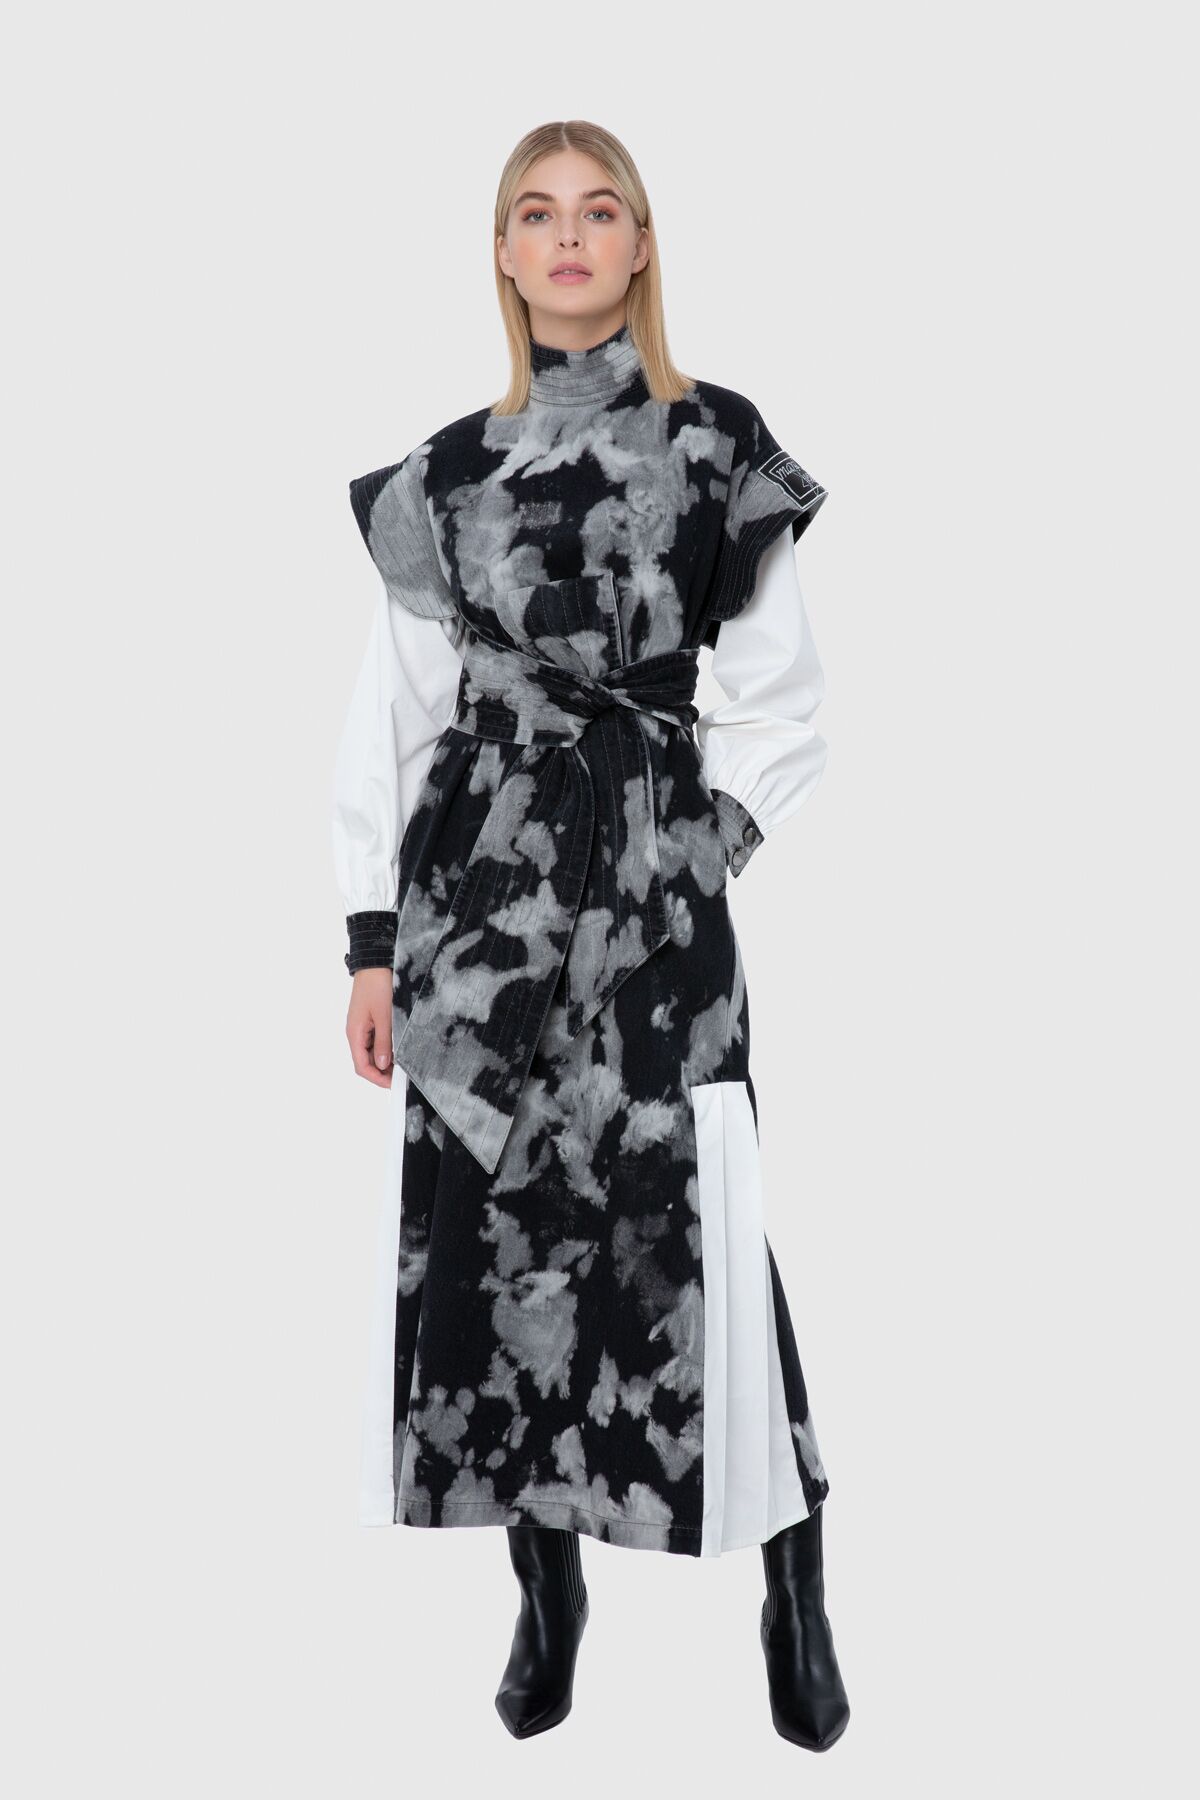 MANI MANI - Jakron Detaylı Kontrast Batik Yıkamalı Jean Elbise